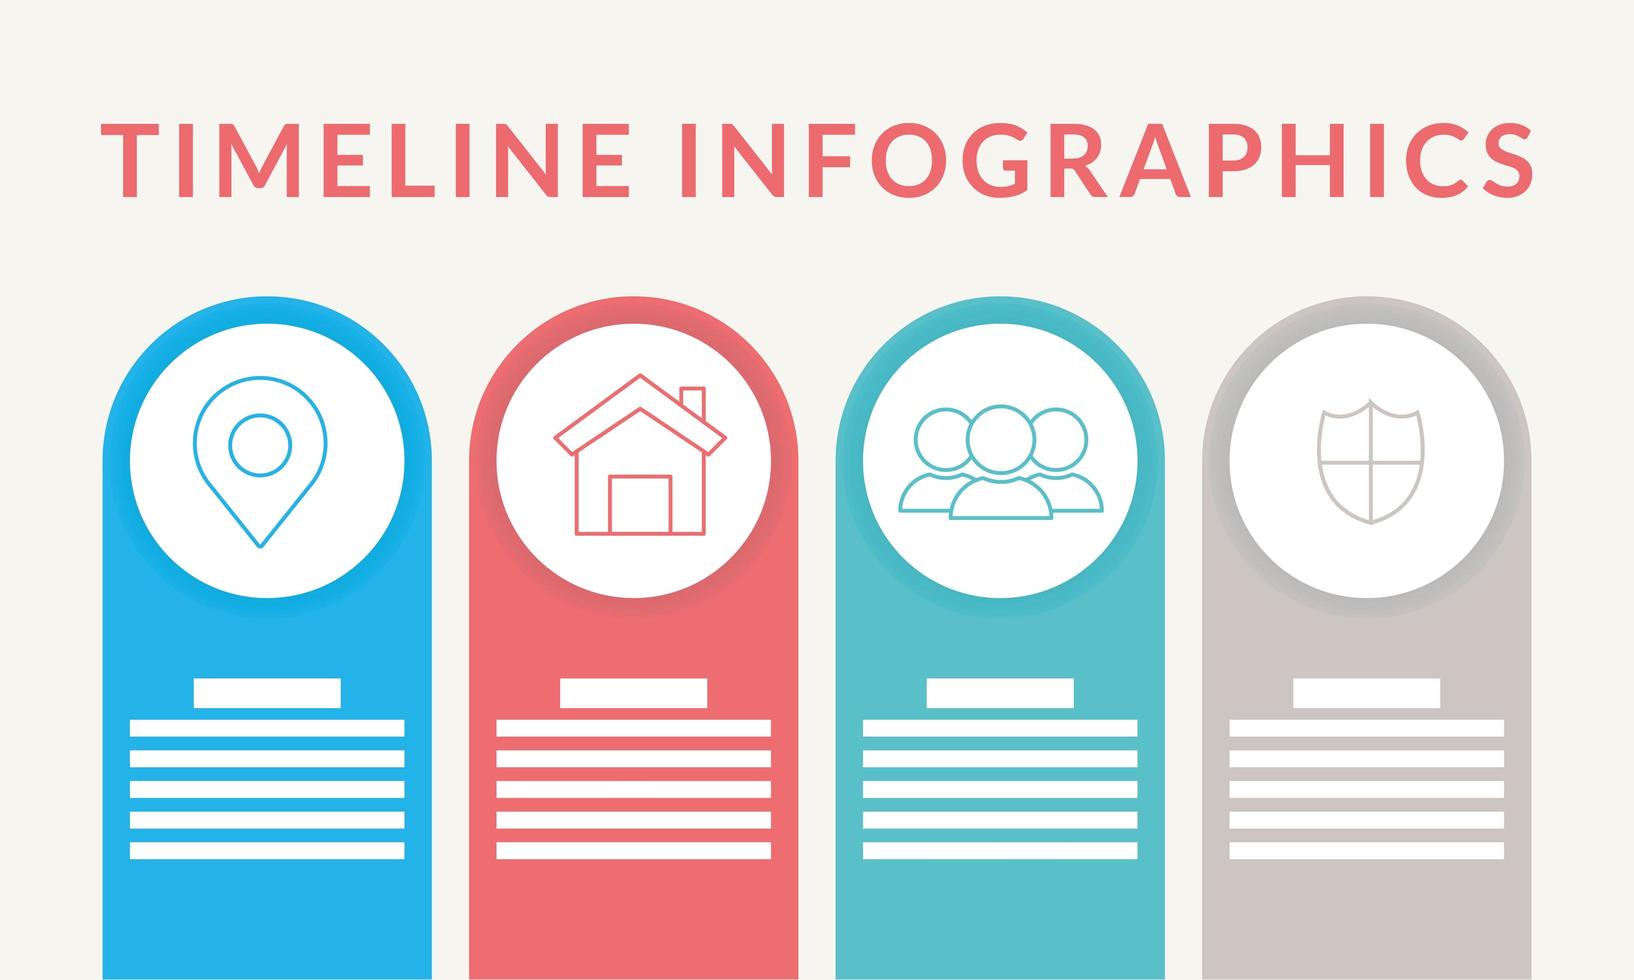 timeline infografica con icone vettore